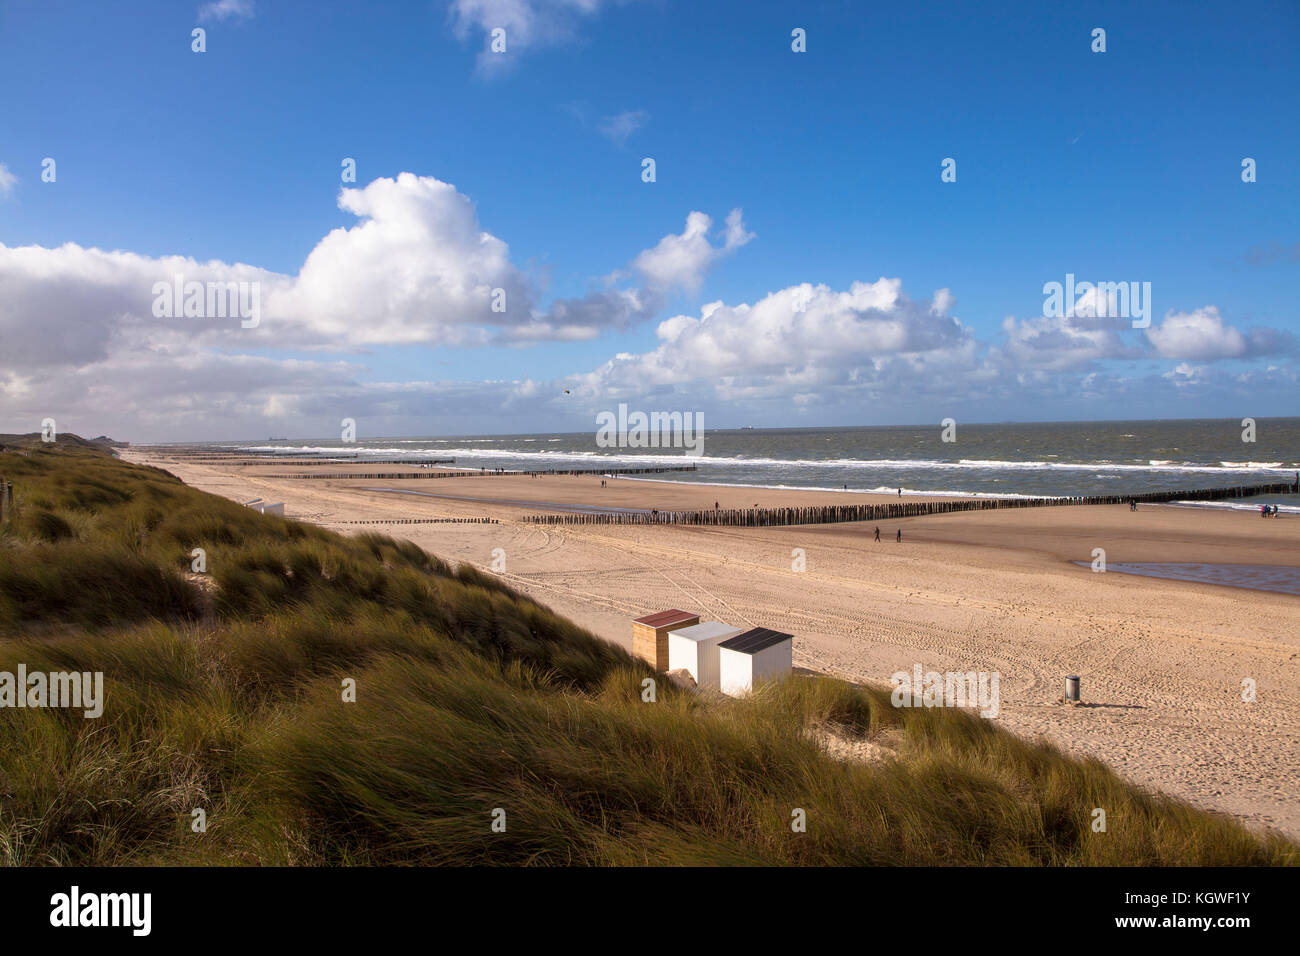 Pays-Bas, à la plage de Domburg sur la péninsule de Walcheren, groins. Niederlande, Am Strand von Domburg auf Walcheren, Buhnen. Banque D'Images